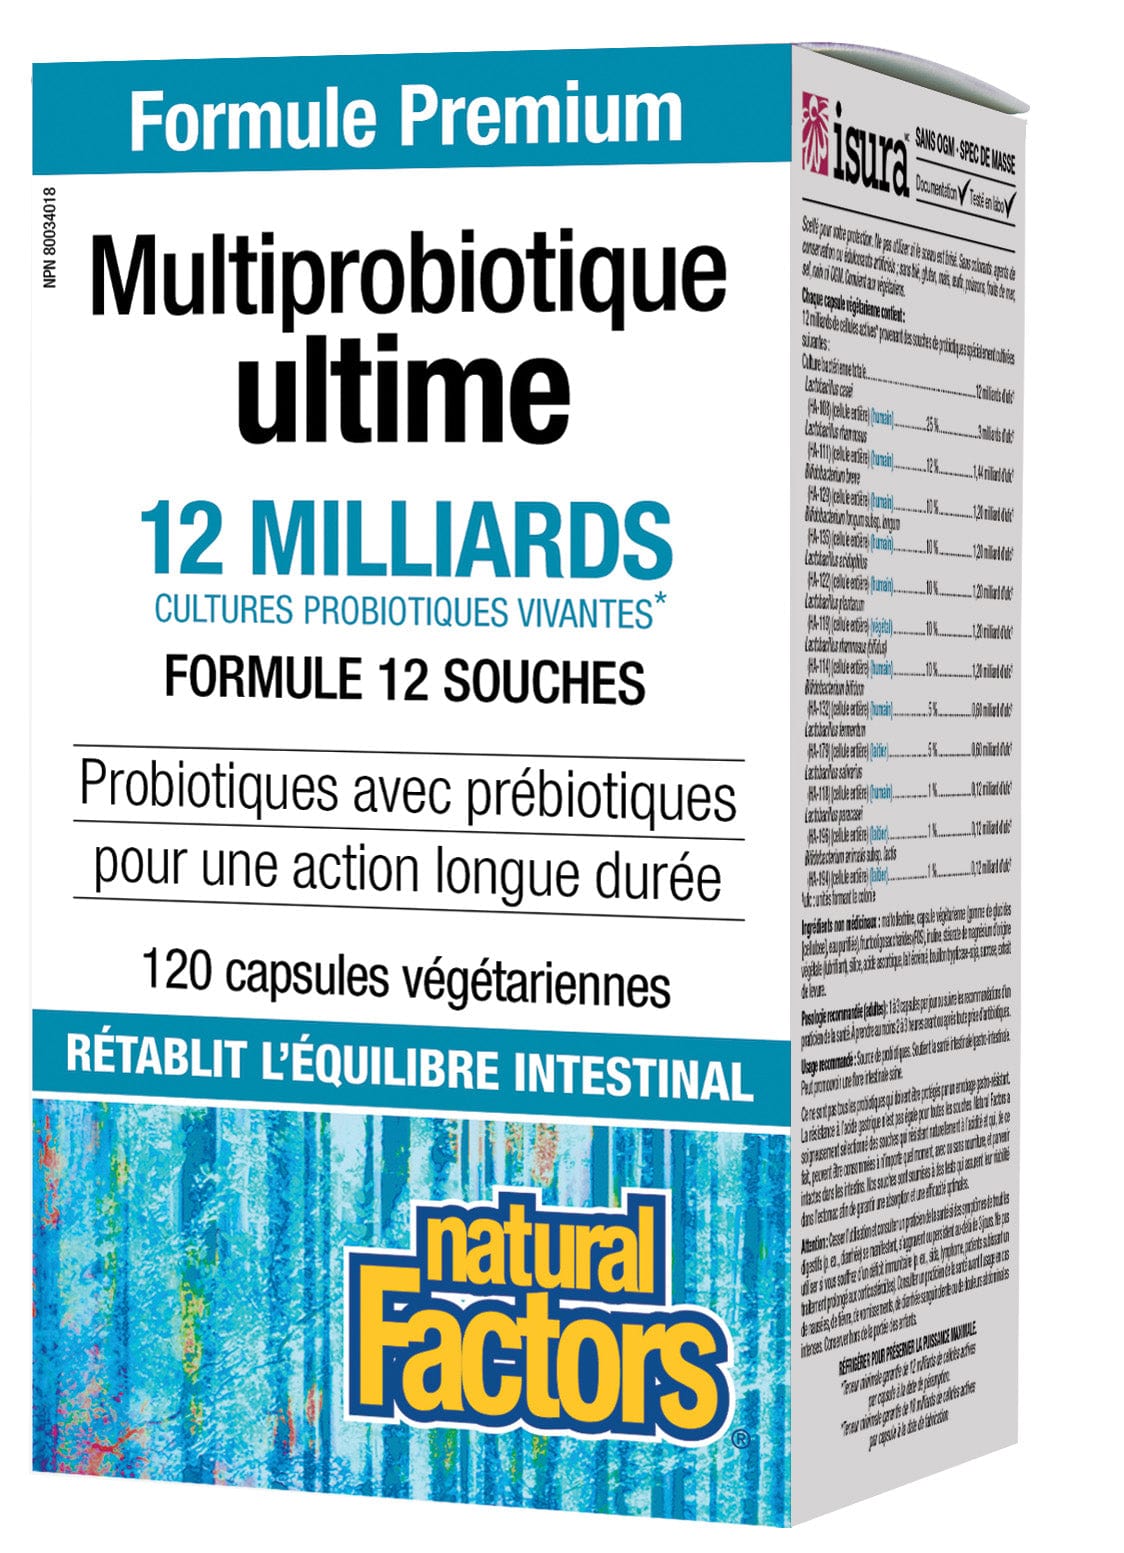 NATURAL FACTORS Suppléments Ultime multi probiotique (12 milliards) 120caps